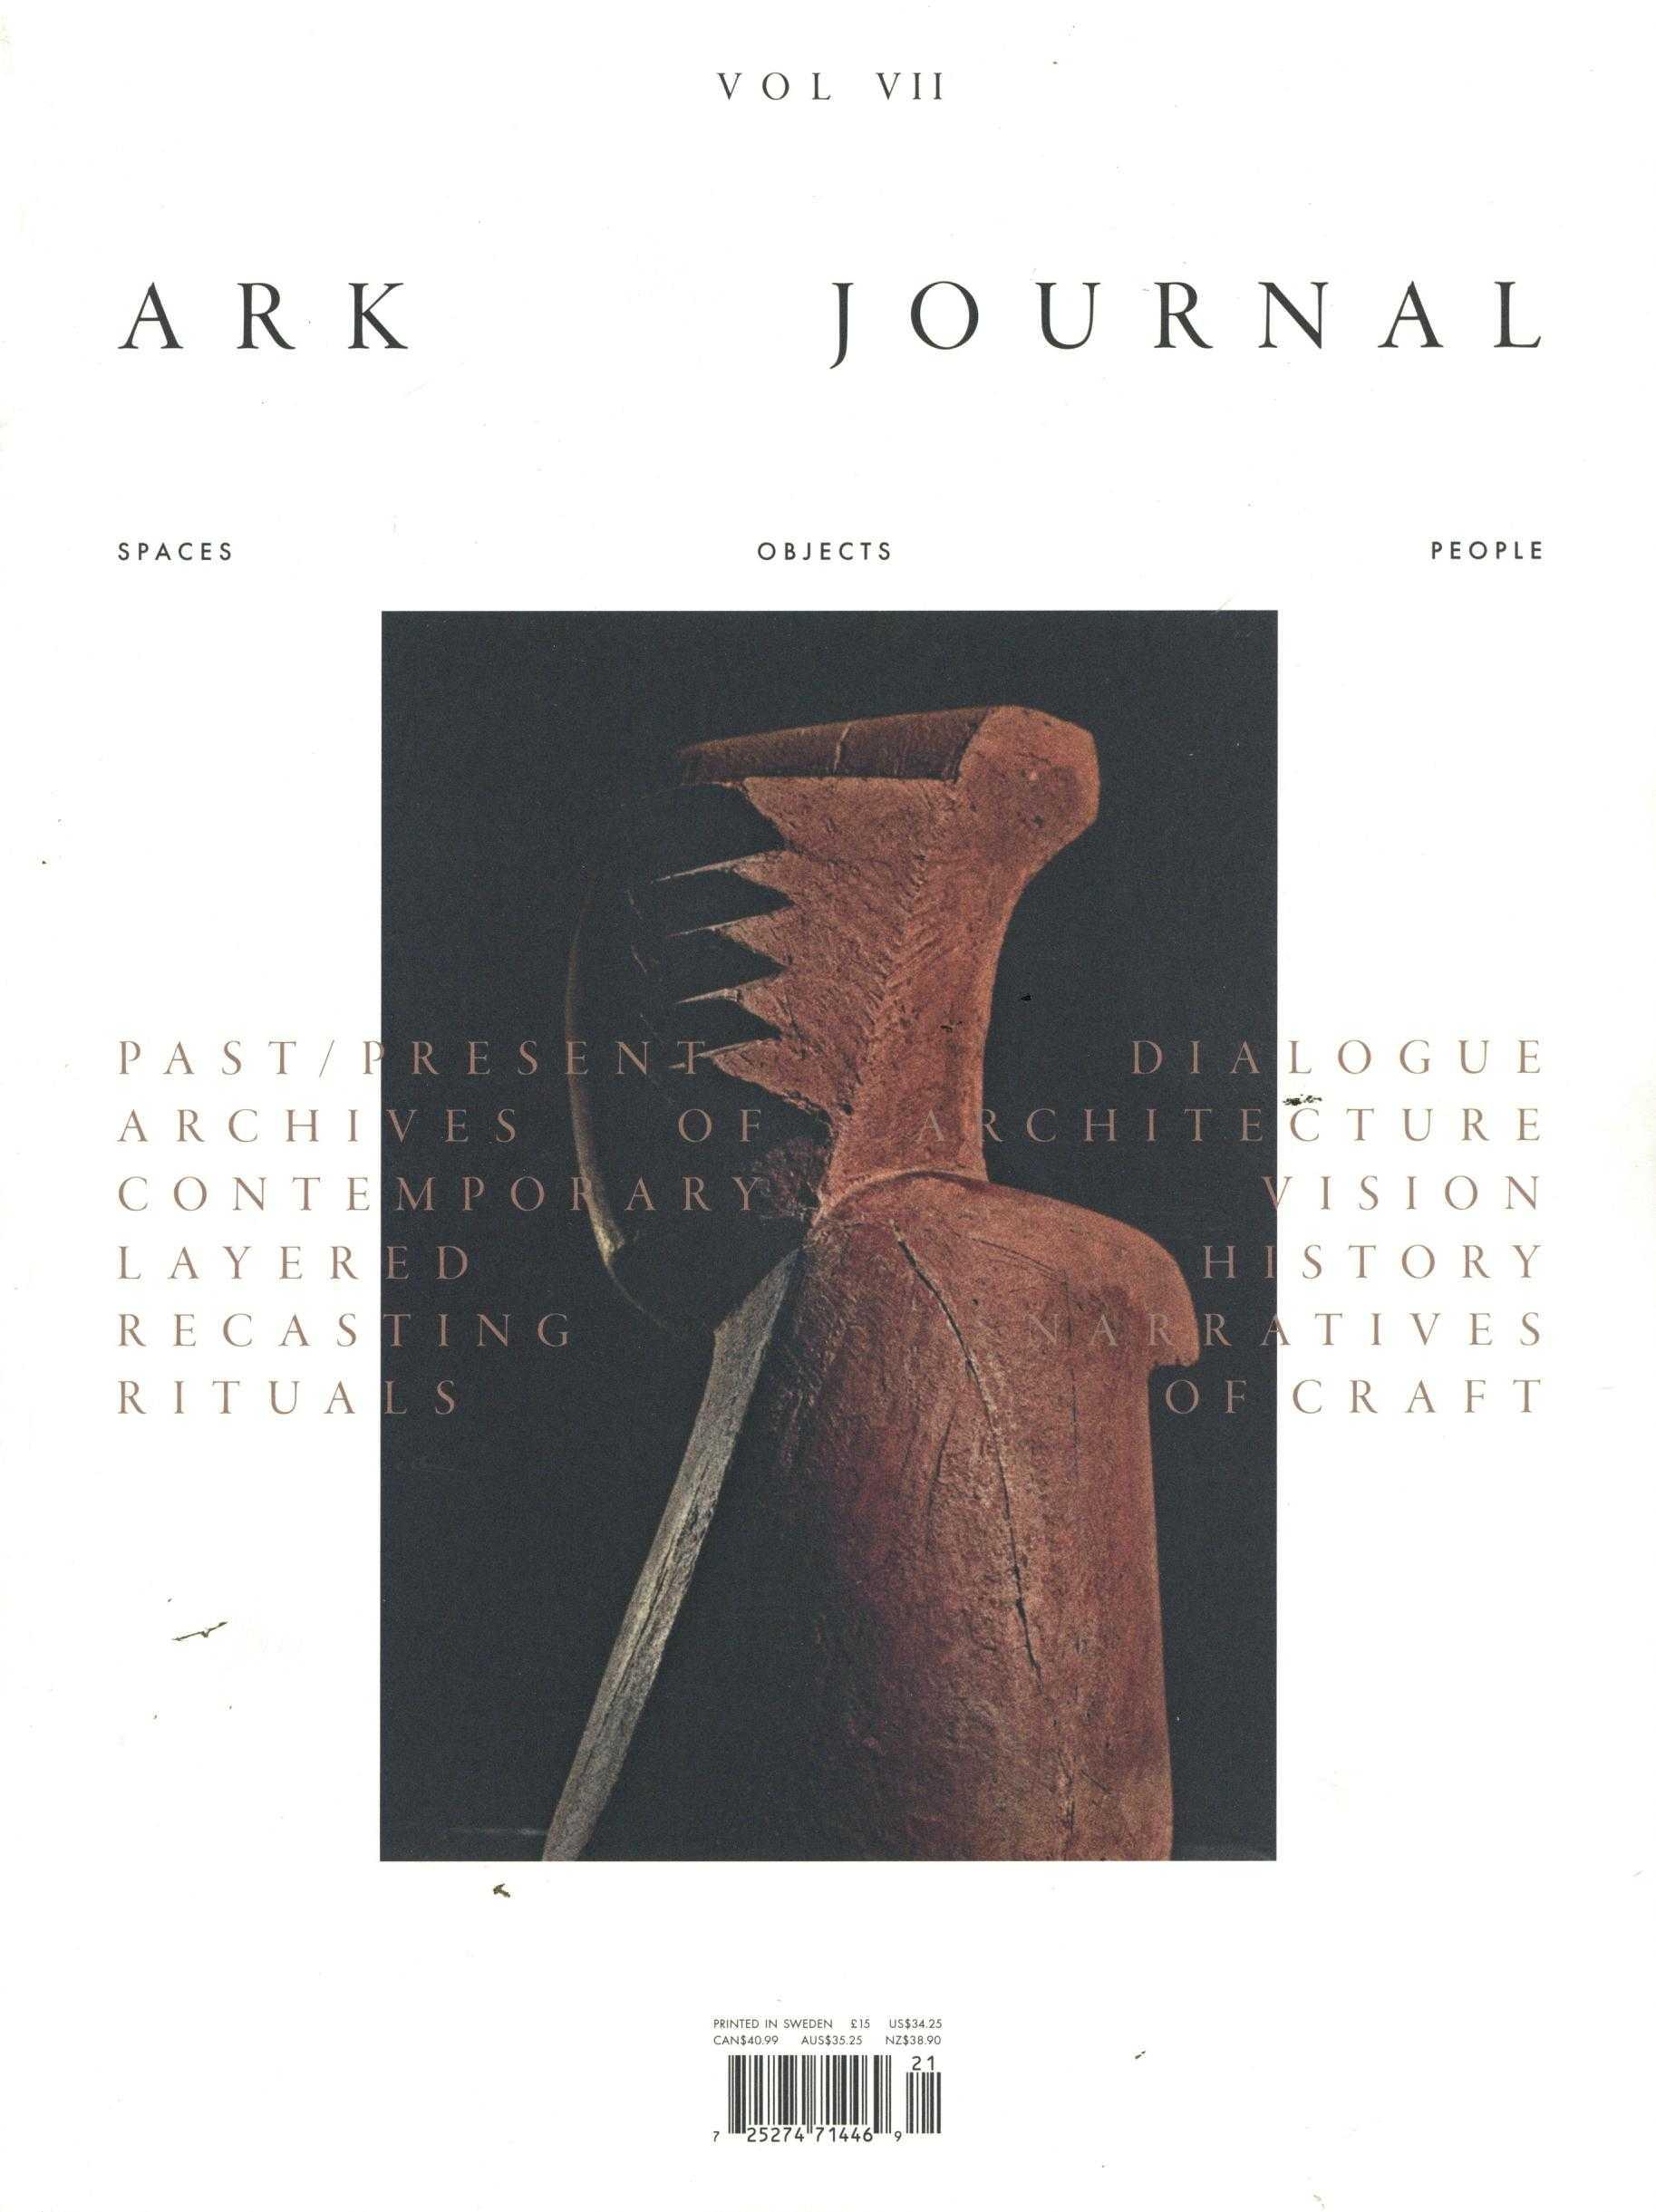 ARK Journal